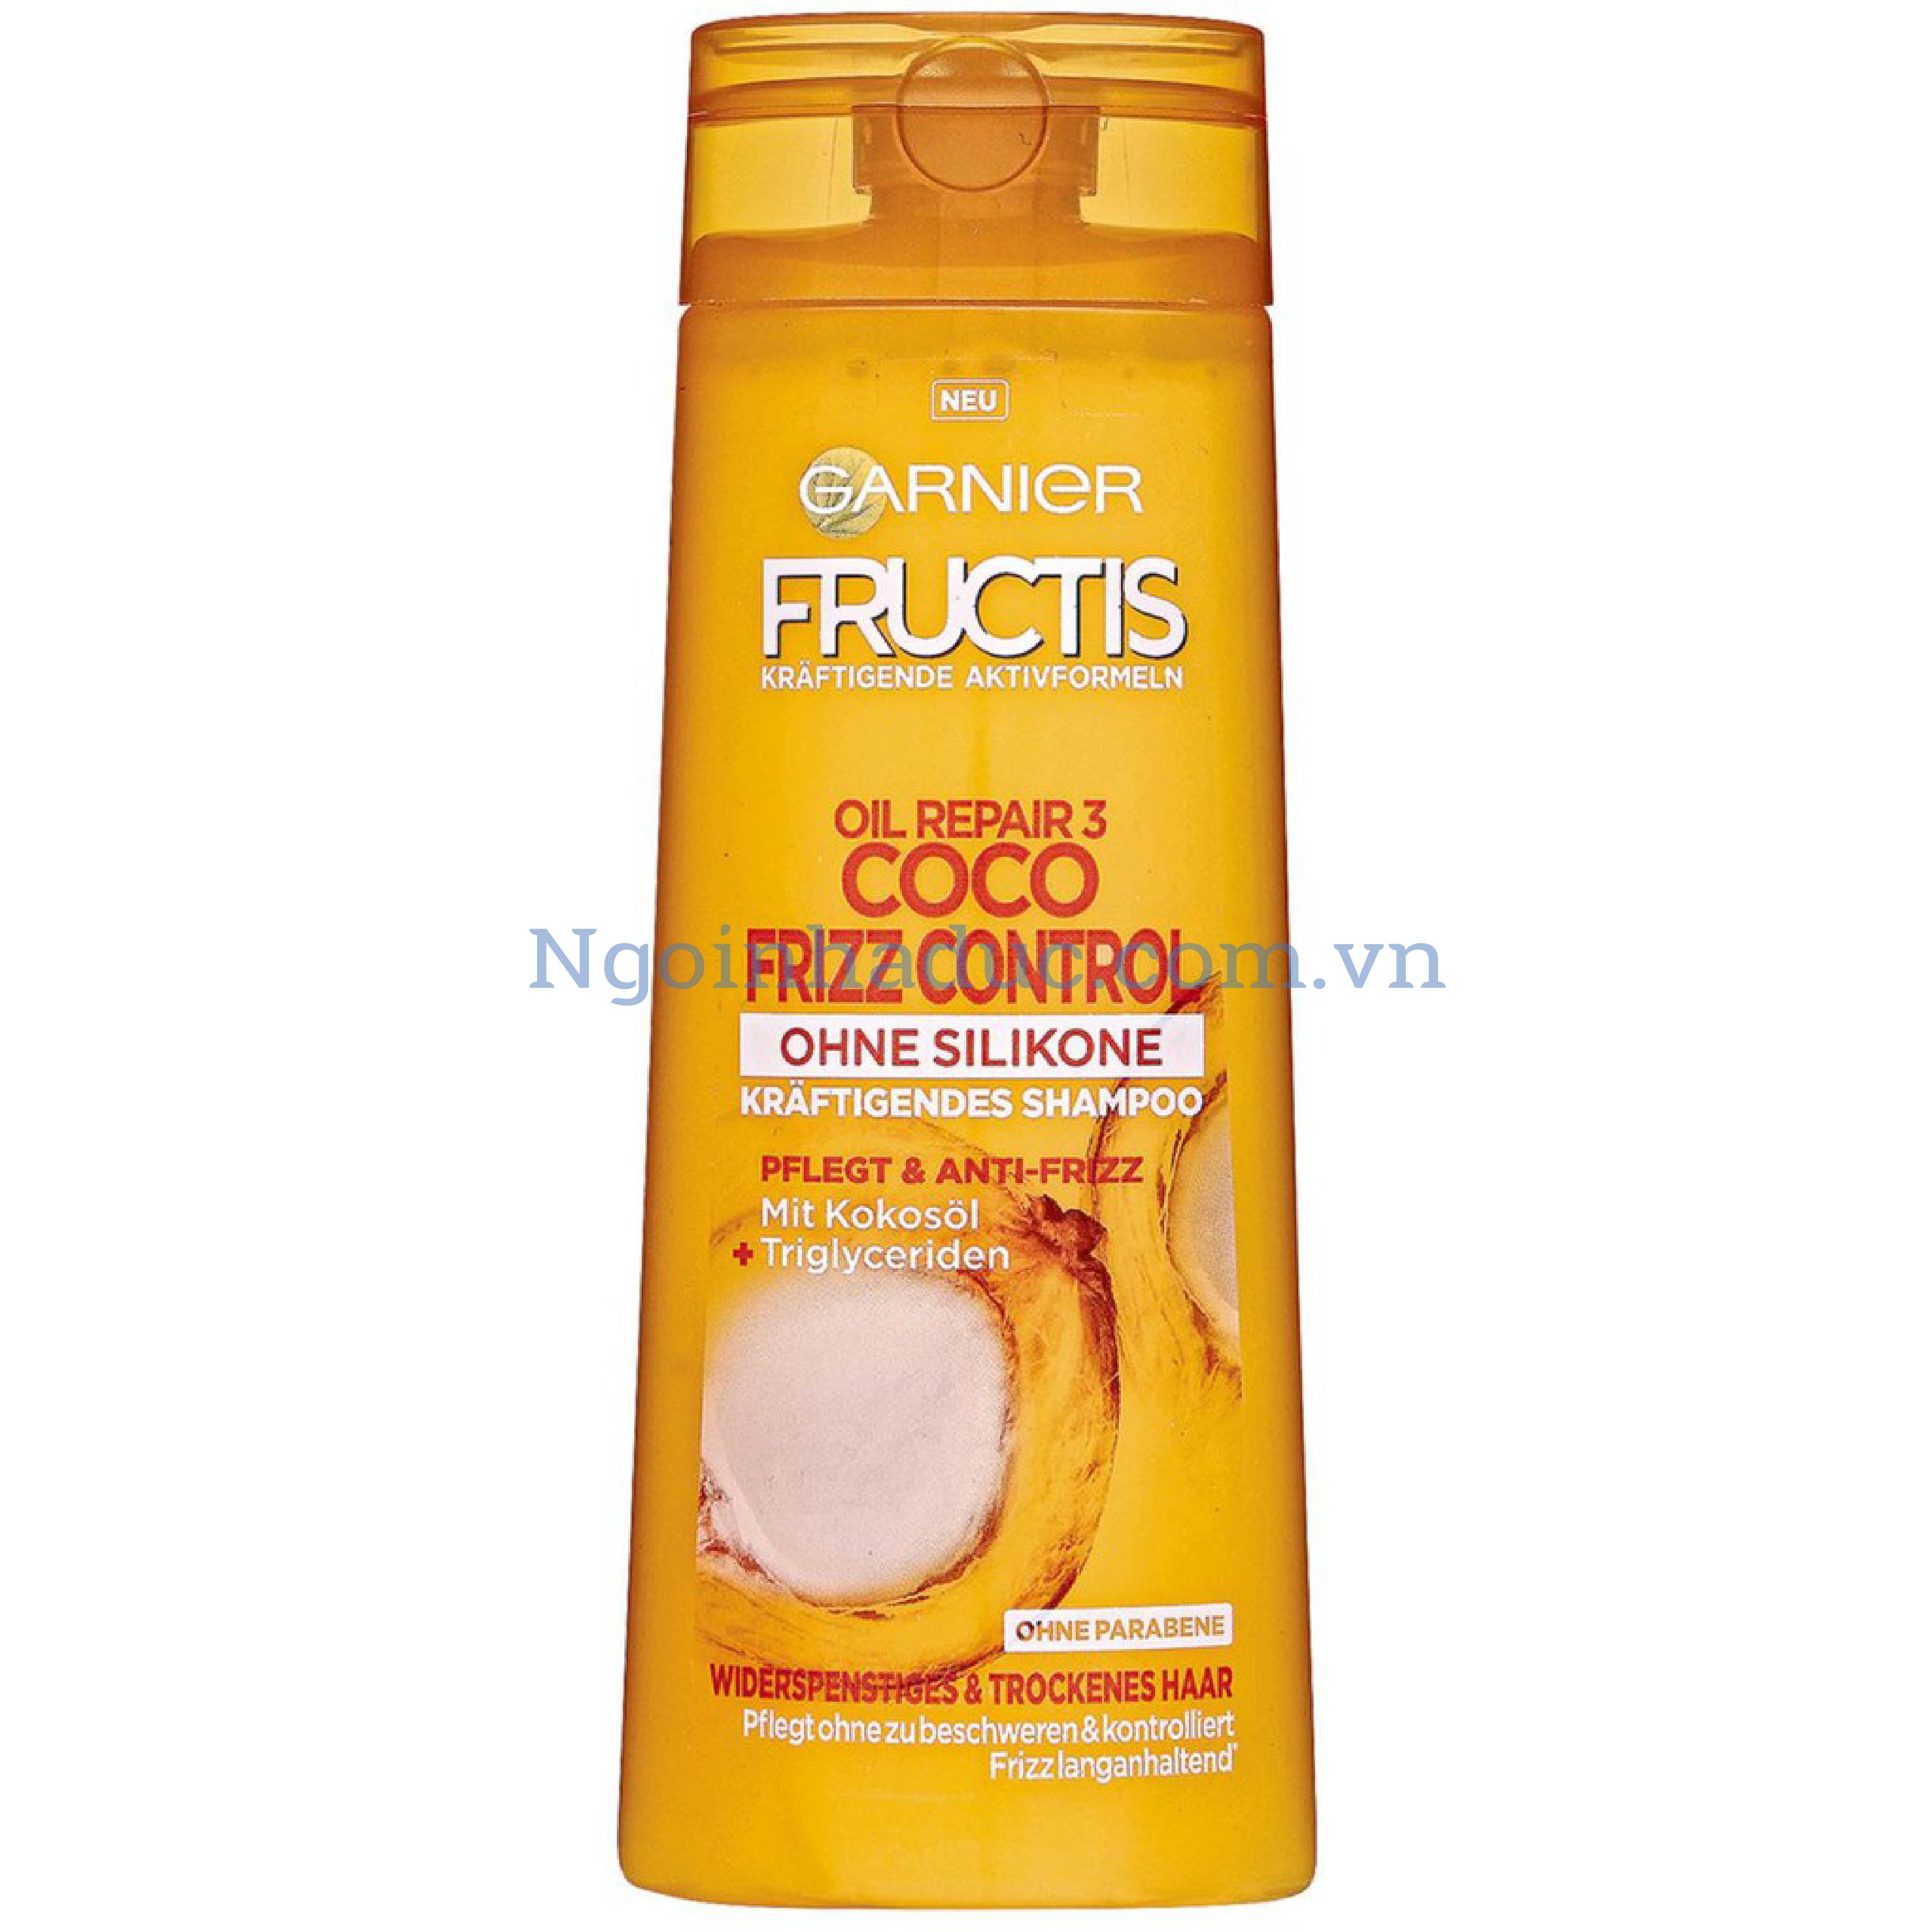 Dầu gội Fructis Oil Repair 3 Coco Frizz Control 250ml (tóc khô xơ/hư tổn)